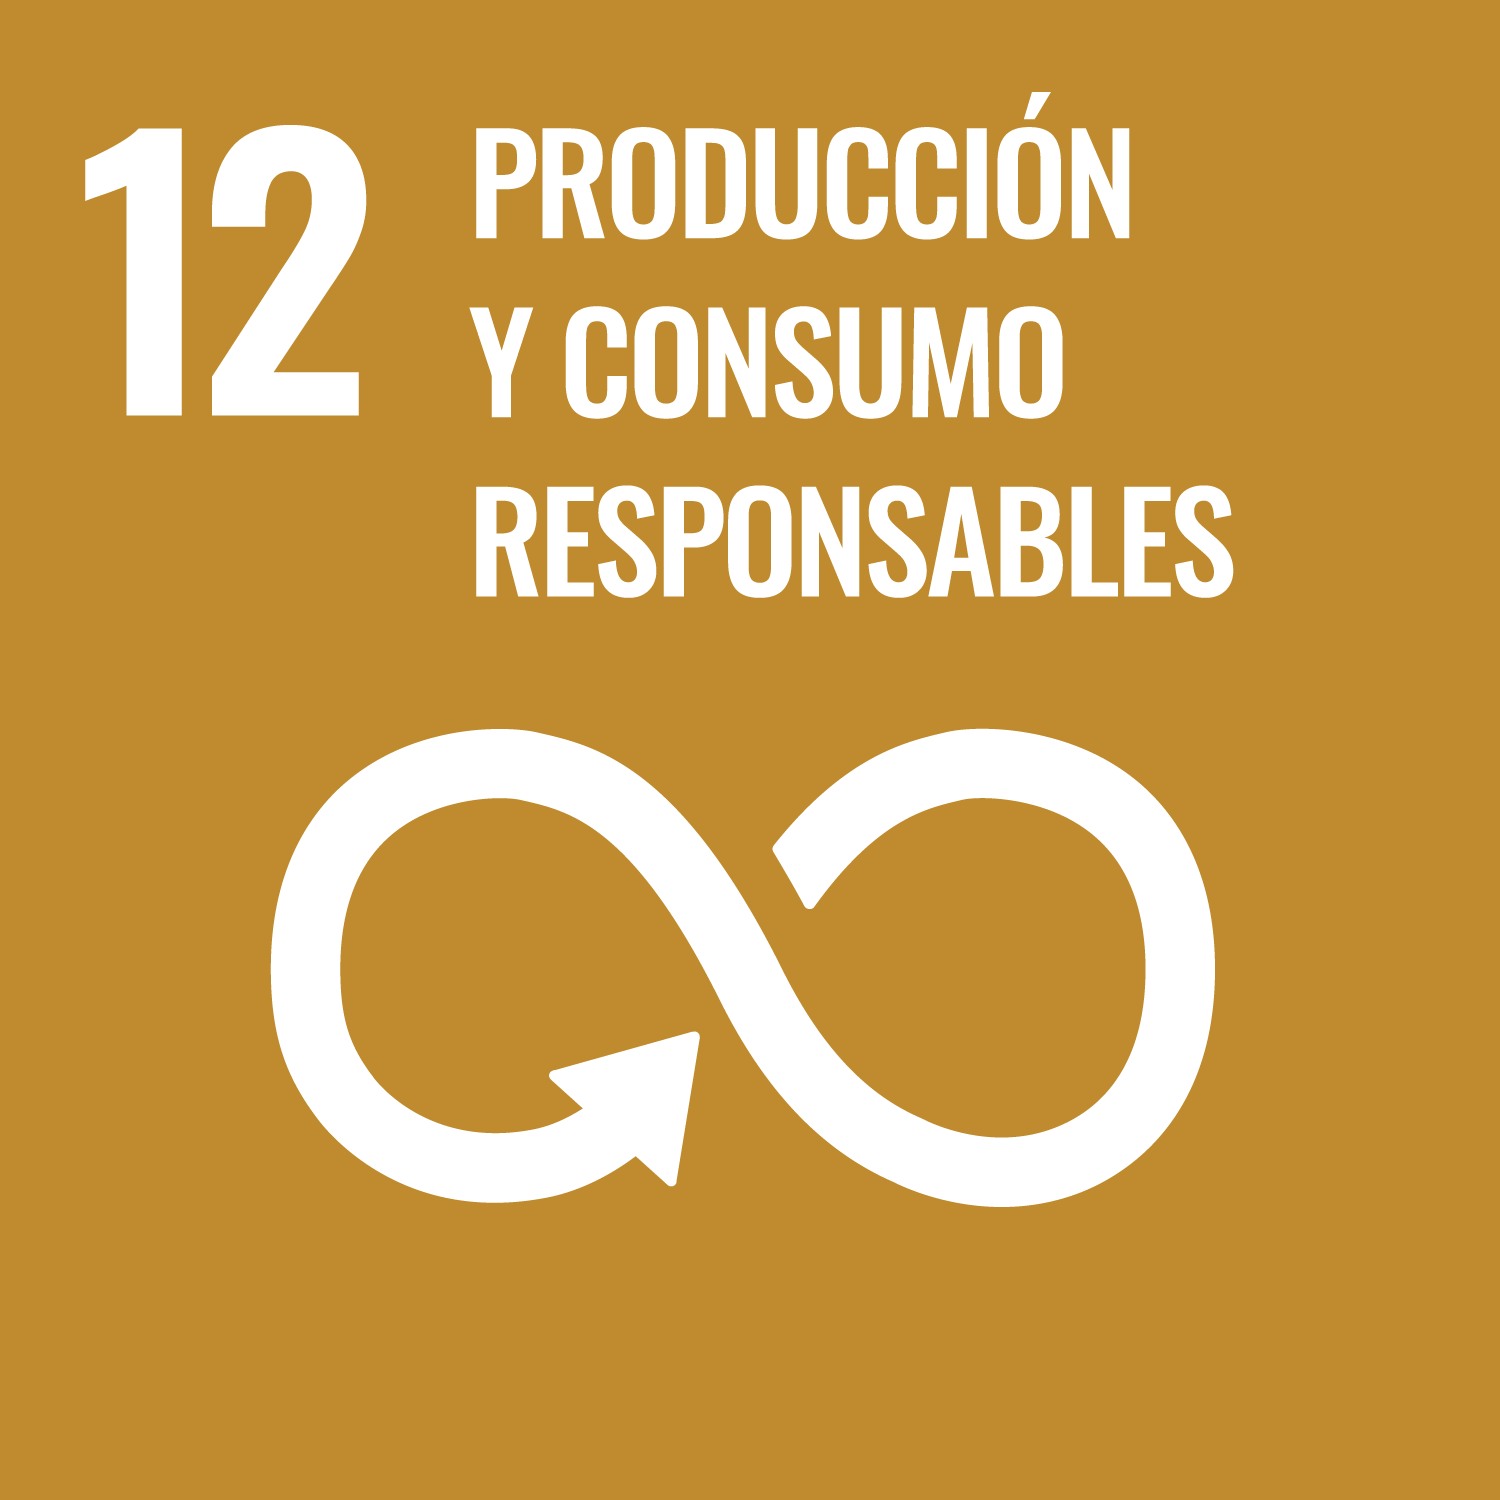 ODs 12. Producción y consumo responsable